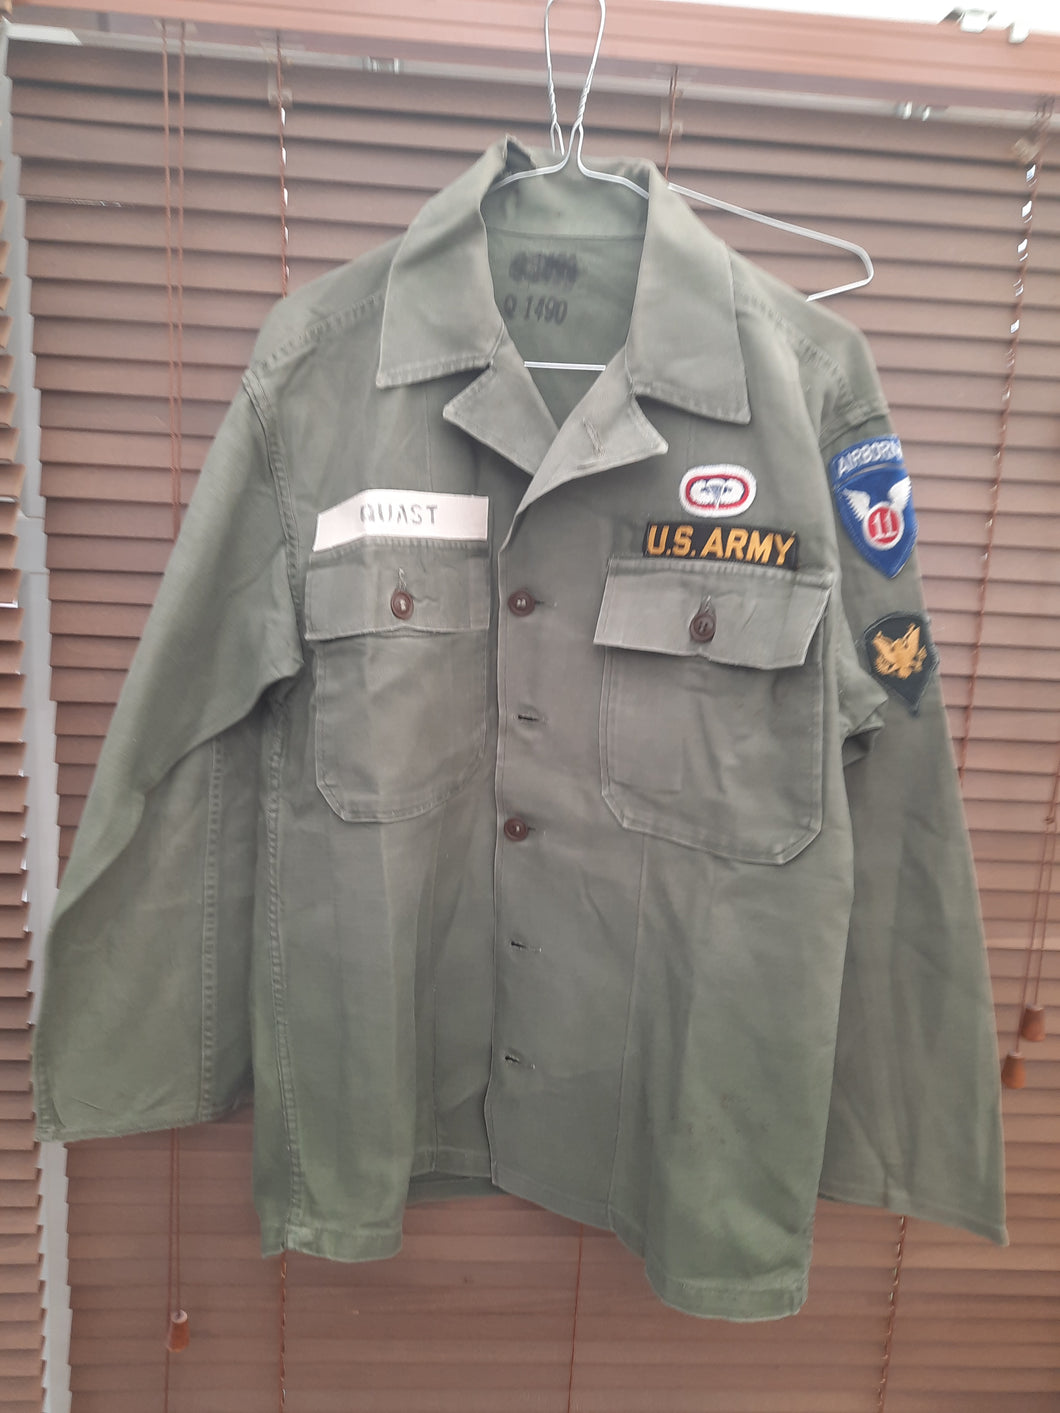 US Vietnam war 1st pattern Fatigue shirt 11th Airborne